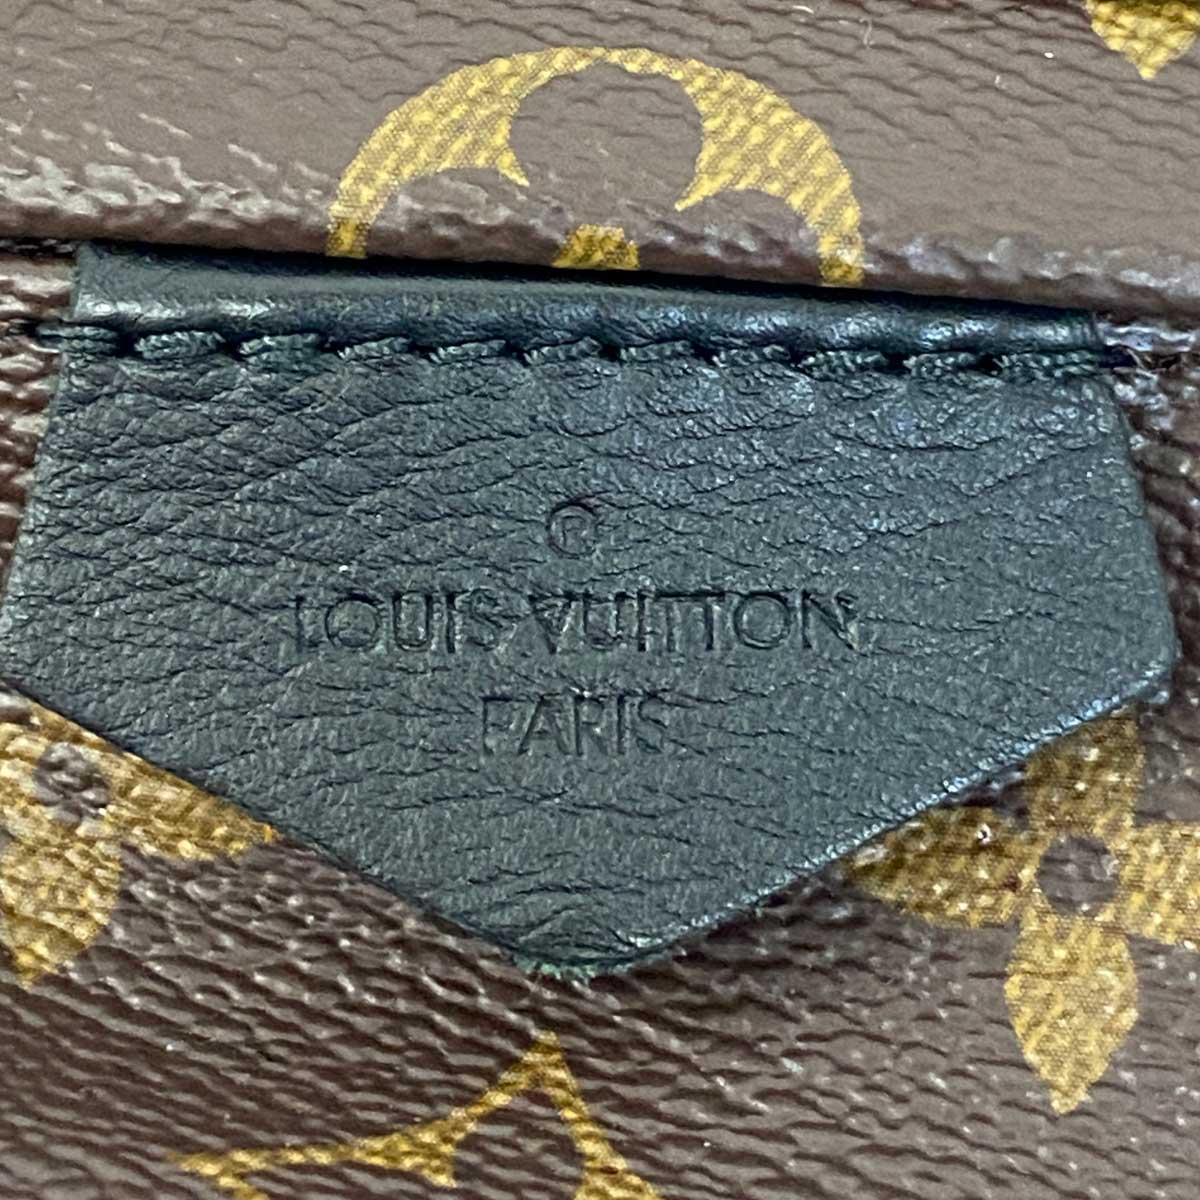 Shop Louis Vuitton PETITE MALLE Palm springs pm by KICKSSTORE